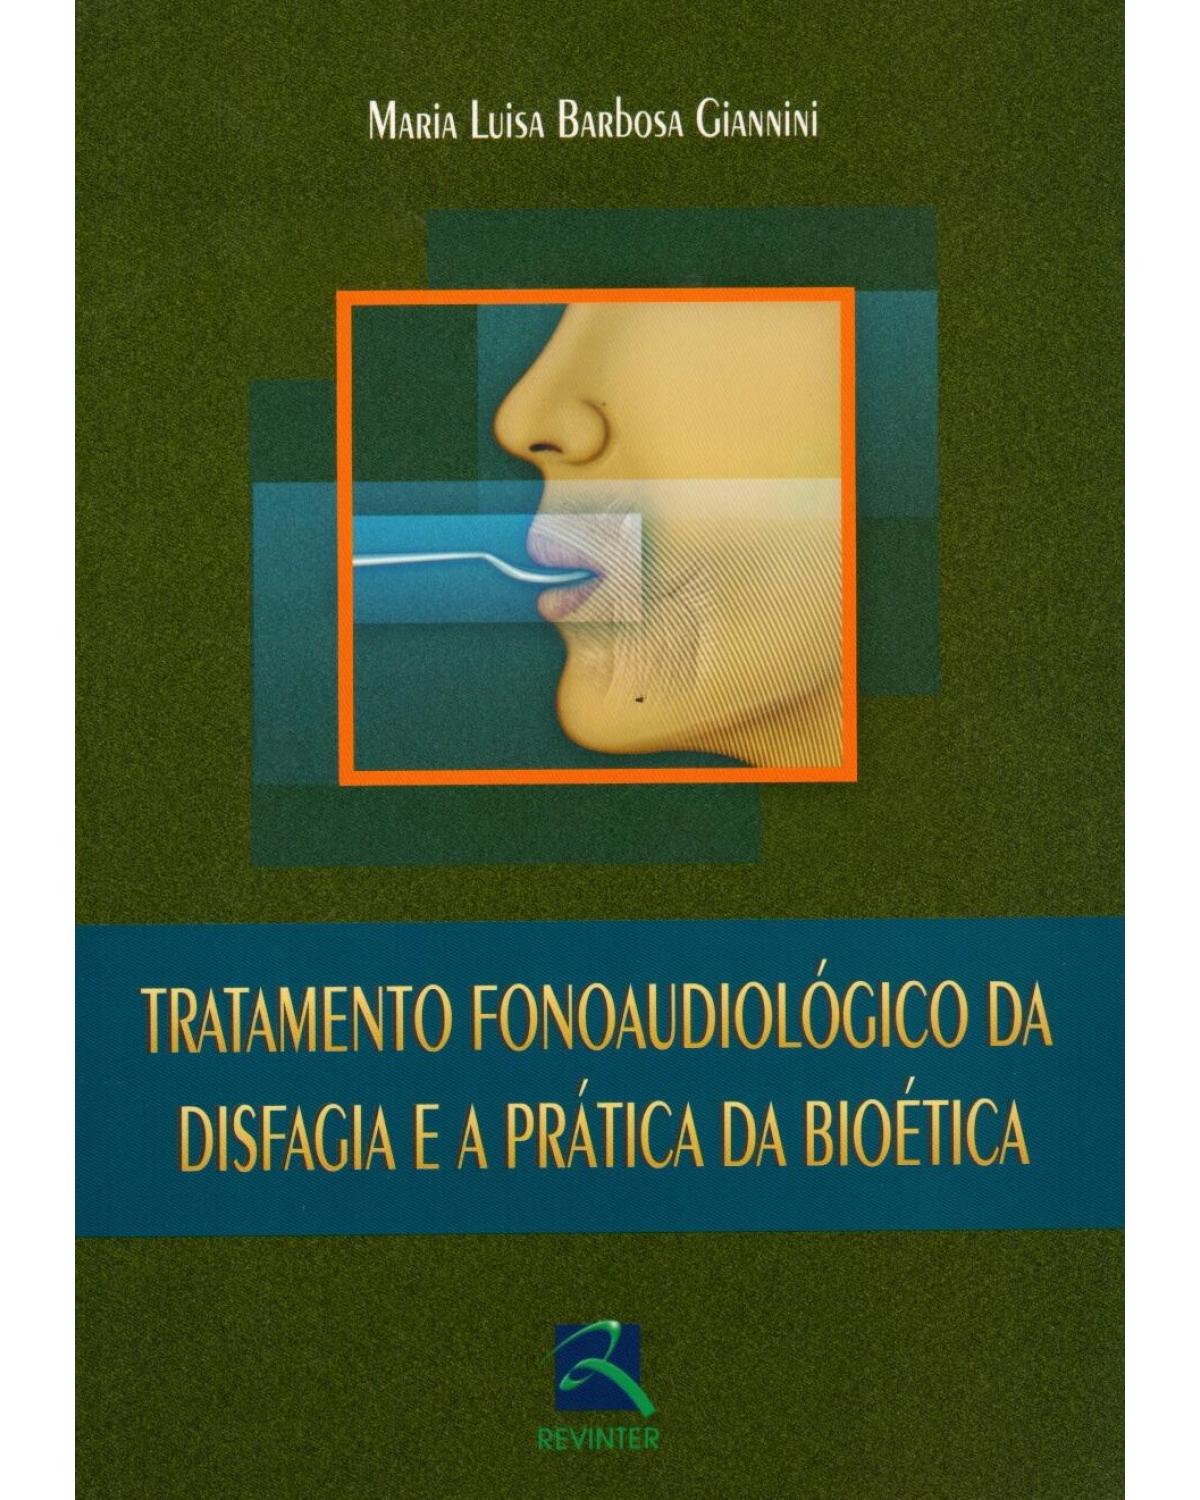 Tratamento fonoaudiológico da disfagia e a prática da bioética - 1ª Edição | 2007